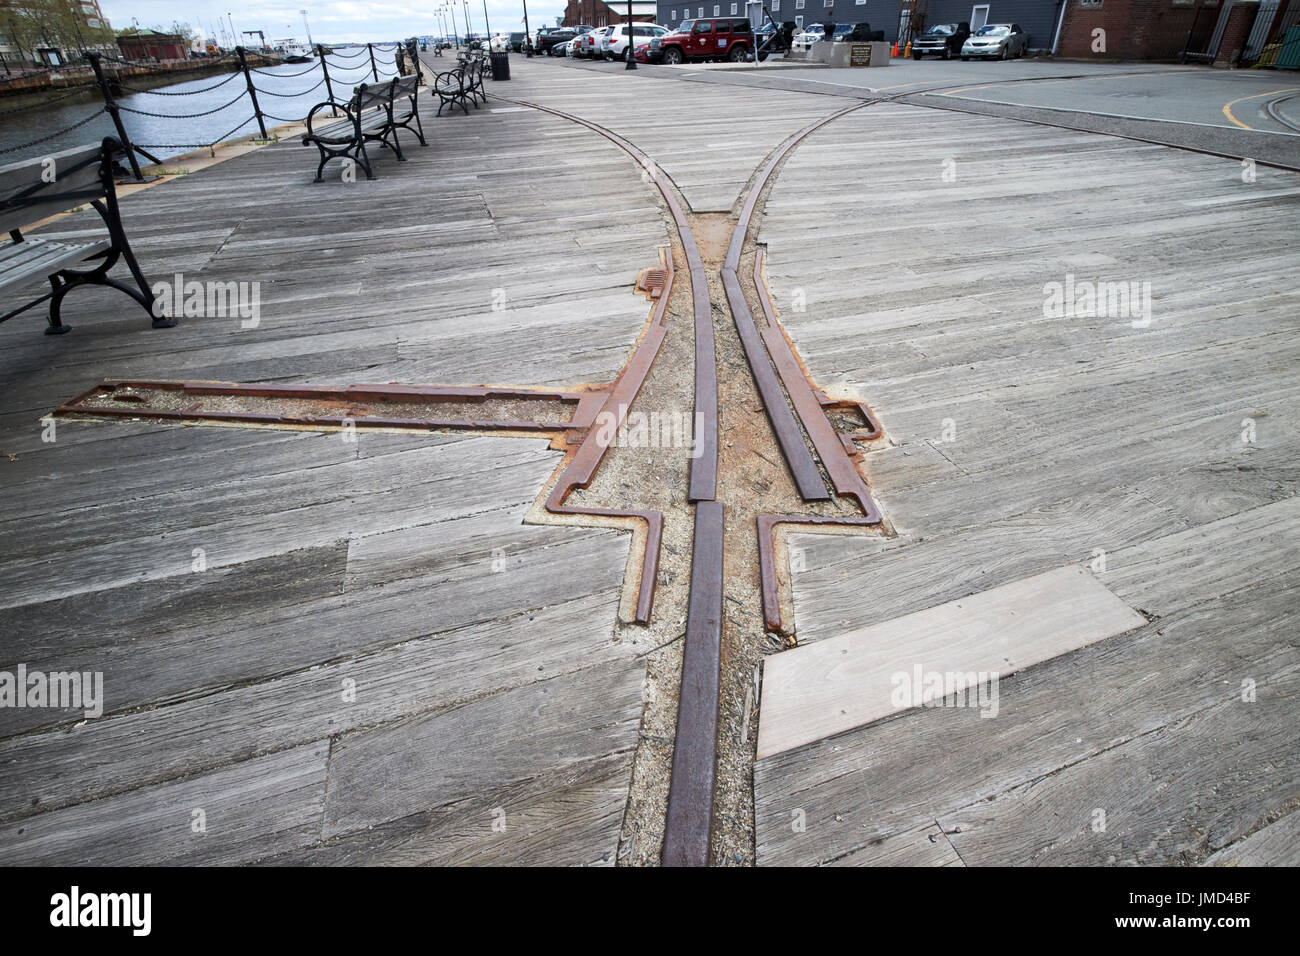 Harborwalk e banchina in legno deck con vecchie rotaie di trasporto Charlestown Navy Yard Boston STATI UNITI D'AMERICA Foto Stock